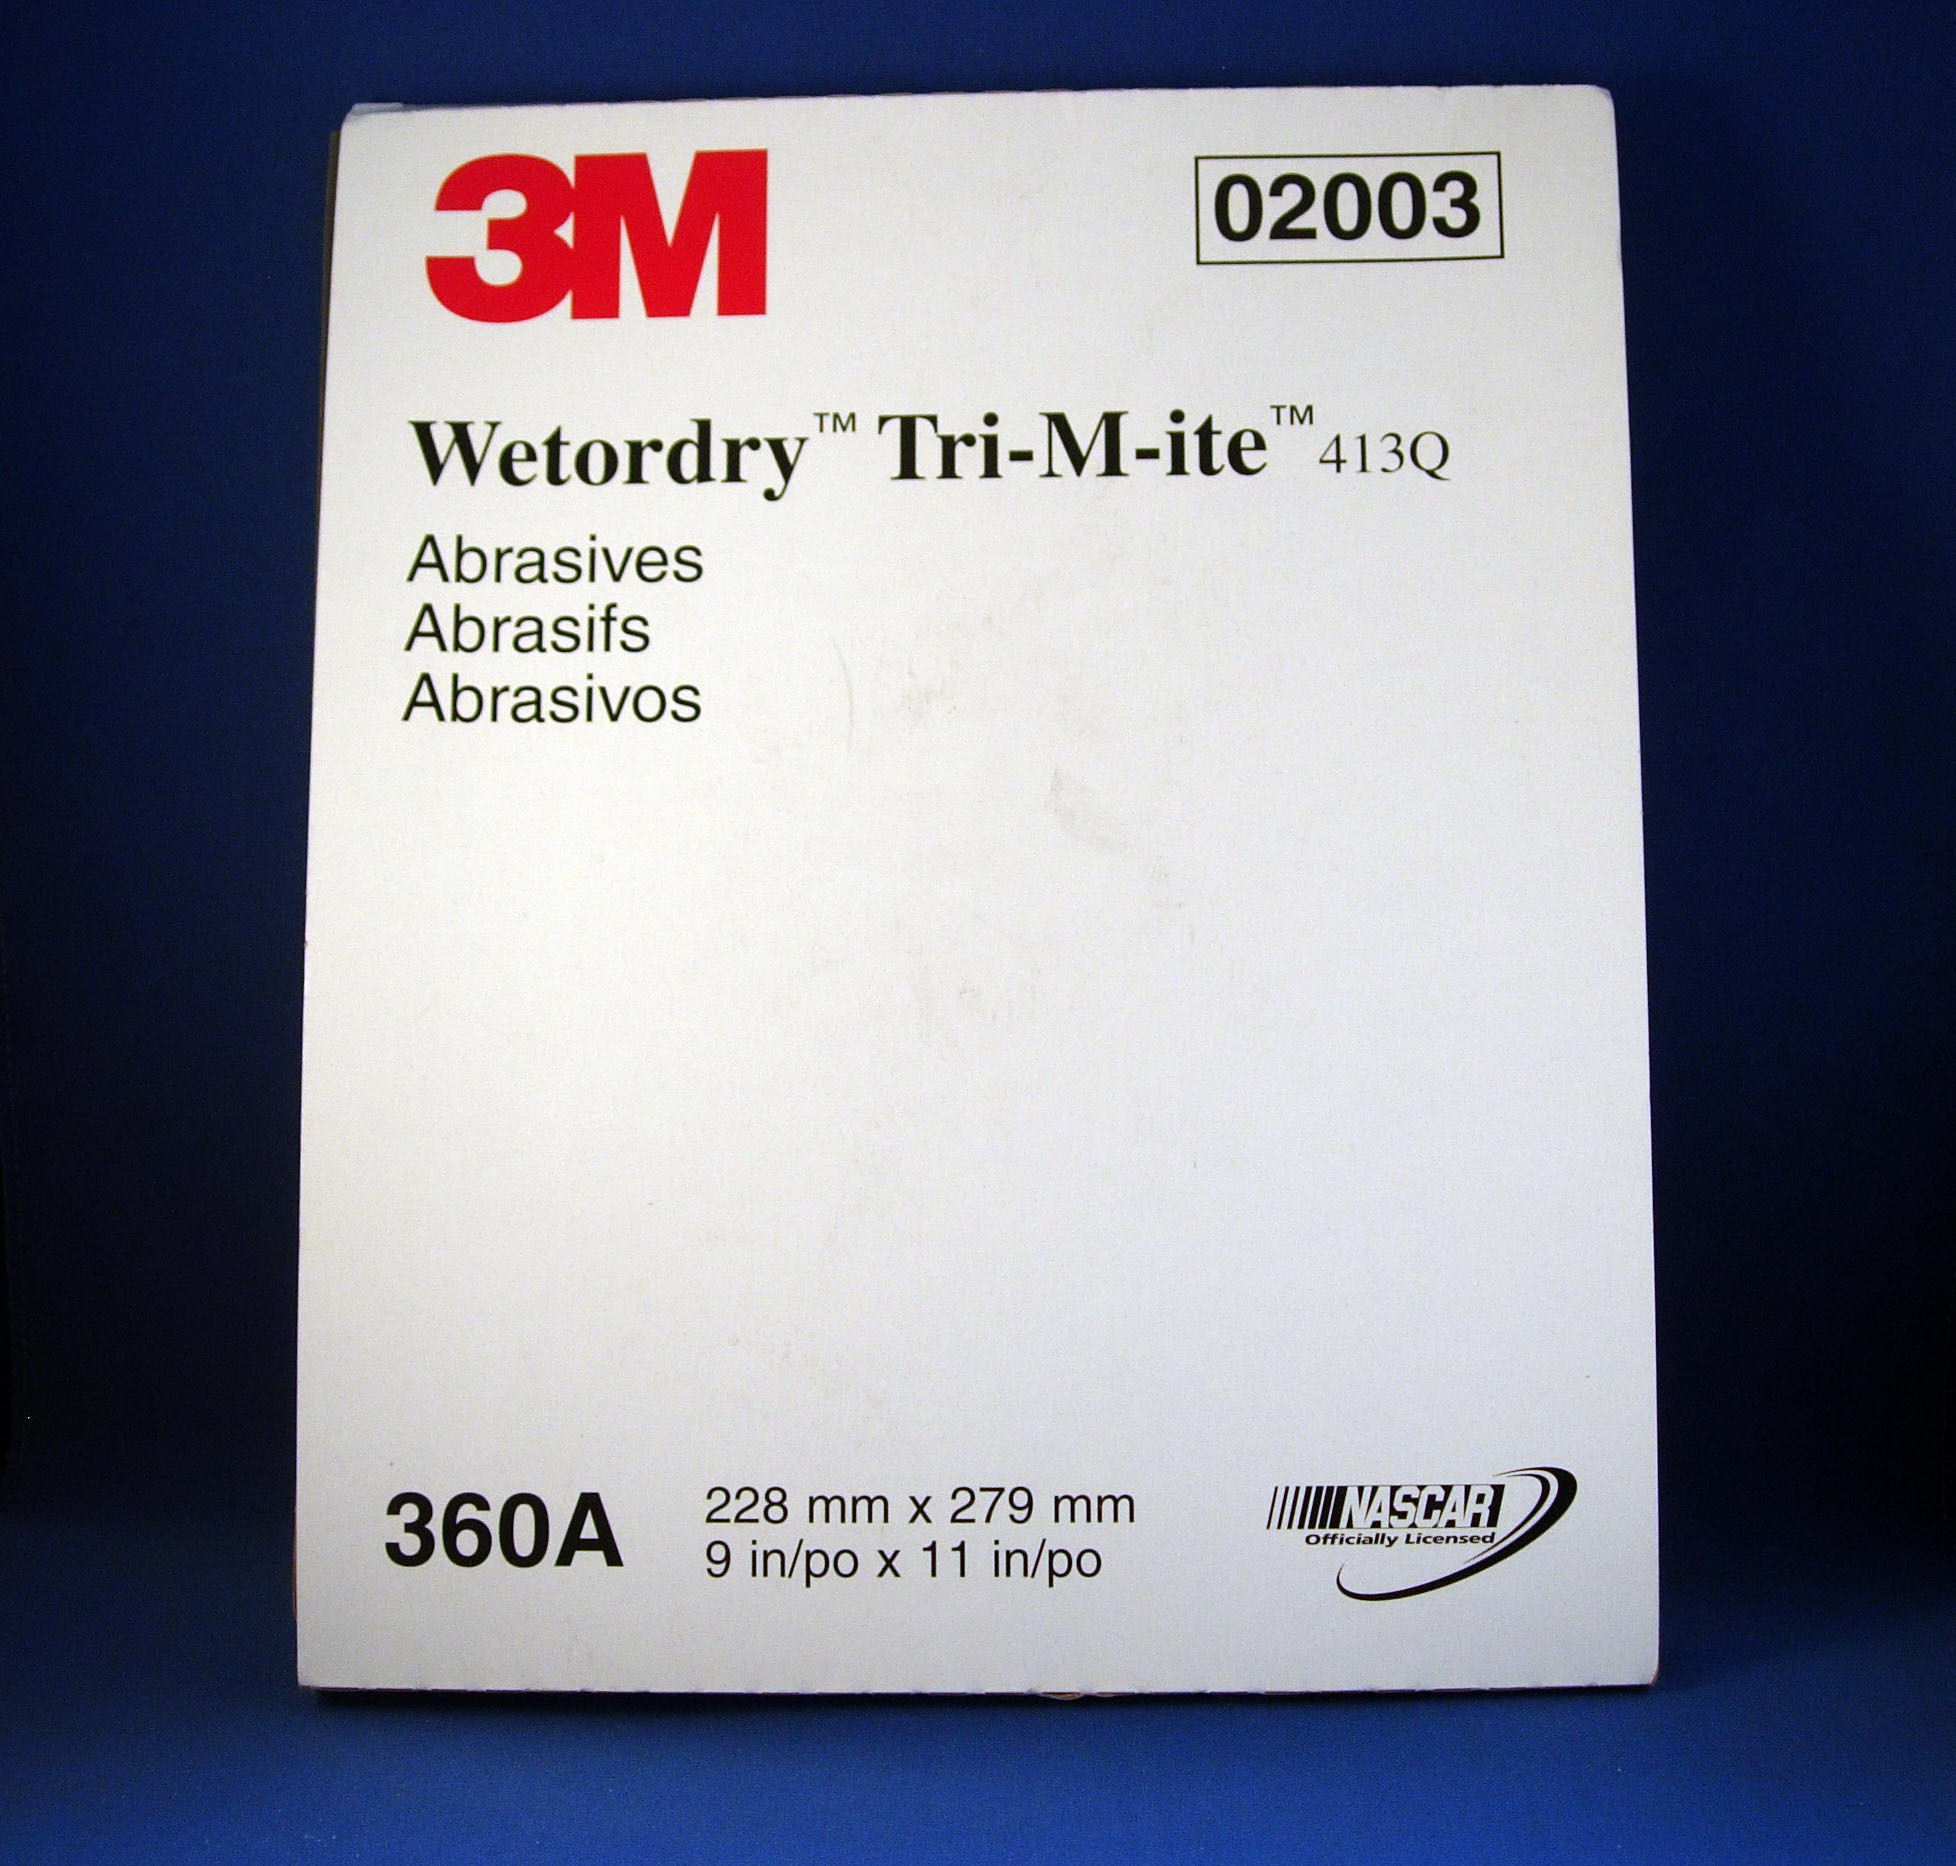 3M Wetordry Tri-M-ite Sheet, 02003, 9 in x 11 in, 360A